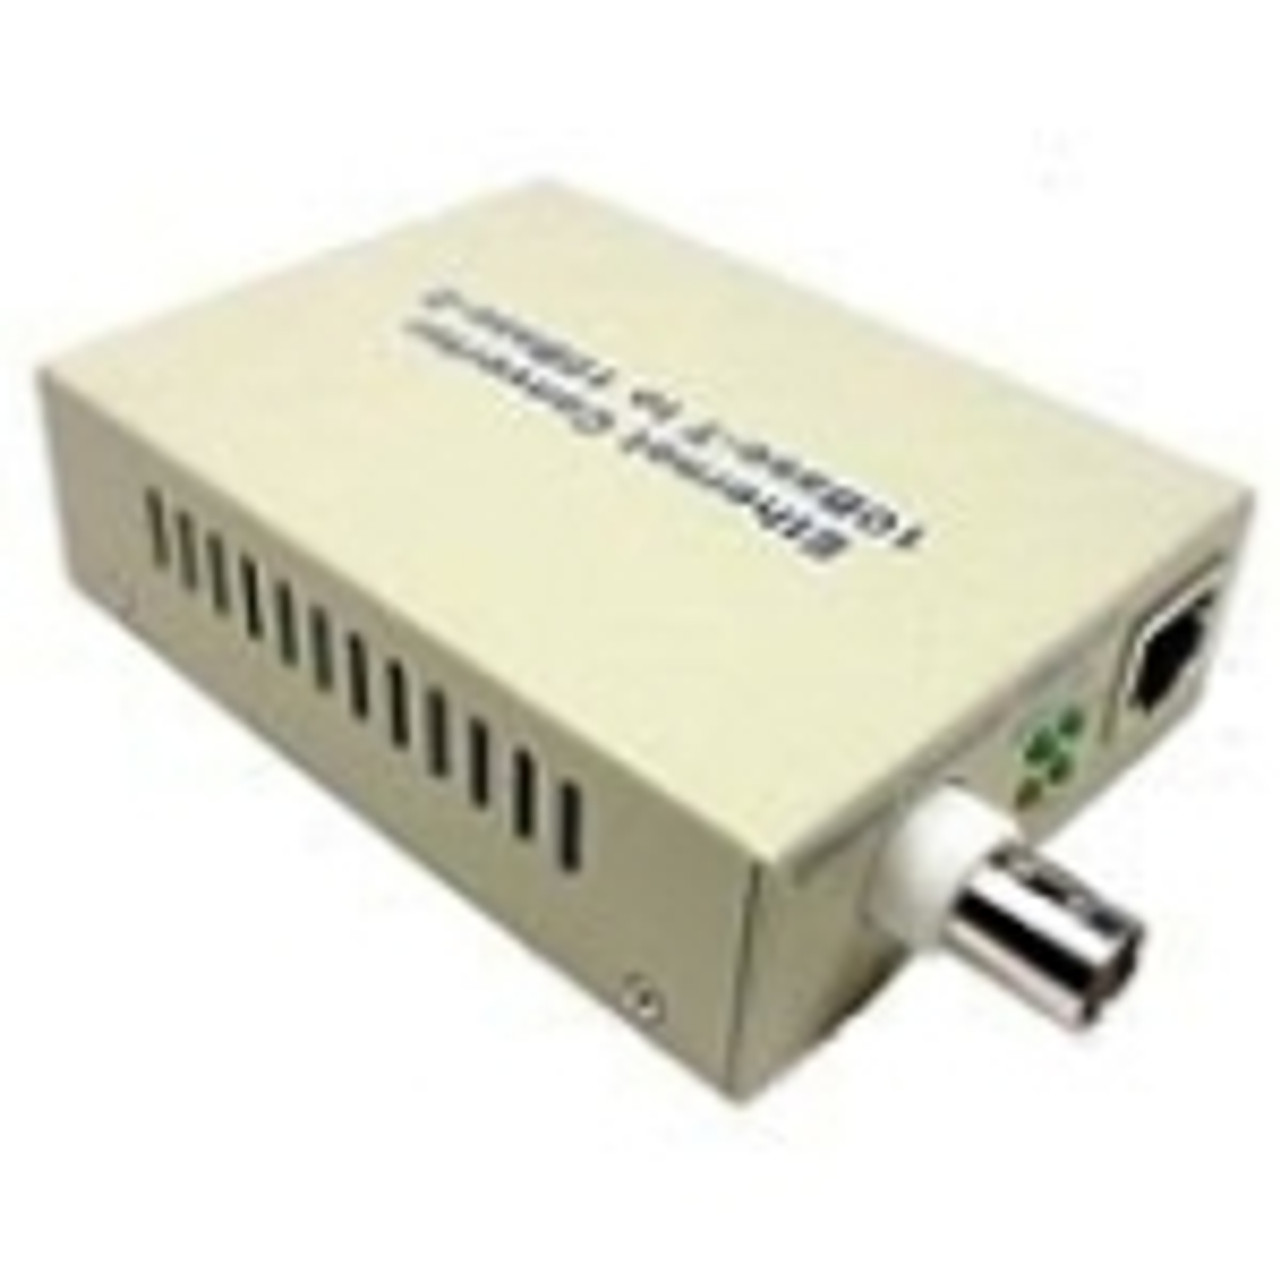 DANCEM0100 Cables Unlimited Danpex Media Converter 1 x RJ-45 , 1 x BNC 10Base-T, 10Base-2 External